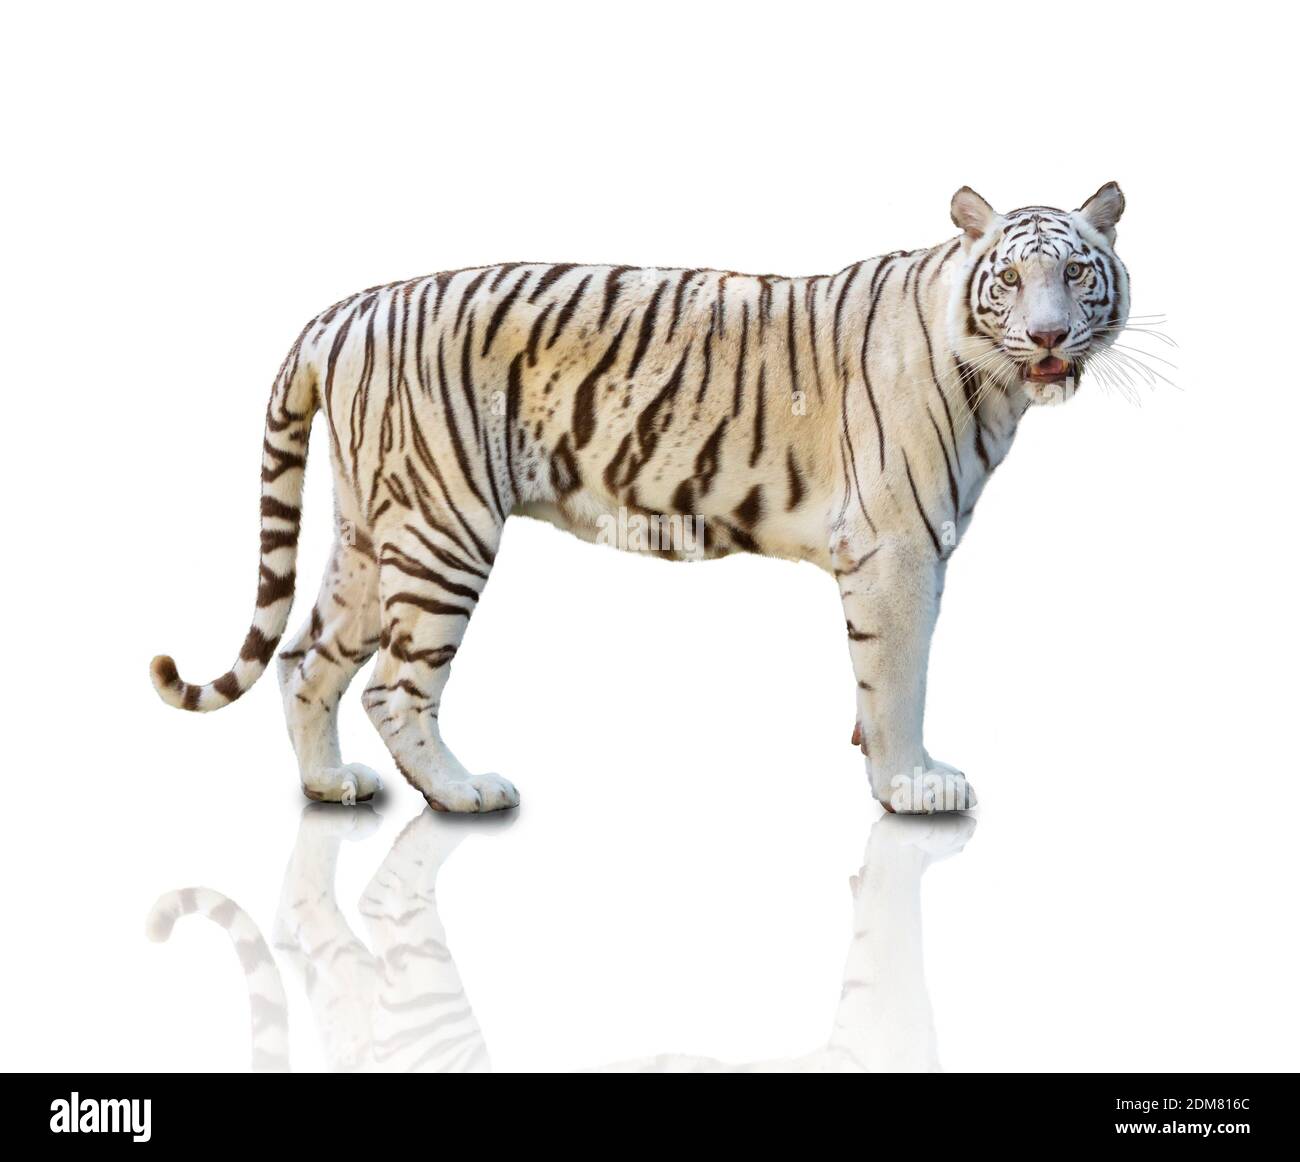 Hình ảnh hổ trắng đứng trên nền trắng là sự kết hợp hoàn hảo giữa vẻ đẹp thanh lịch và sức mạnh nghẹn ngào. Với bộ lông màu trắng tinh khiết, con hổ trắng đứng đó sẽ thu hút sự chú ý của bất kỳ ai.